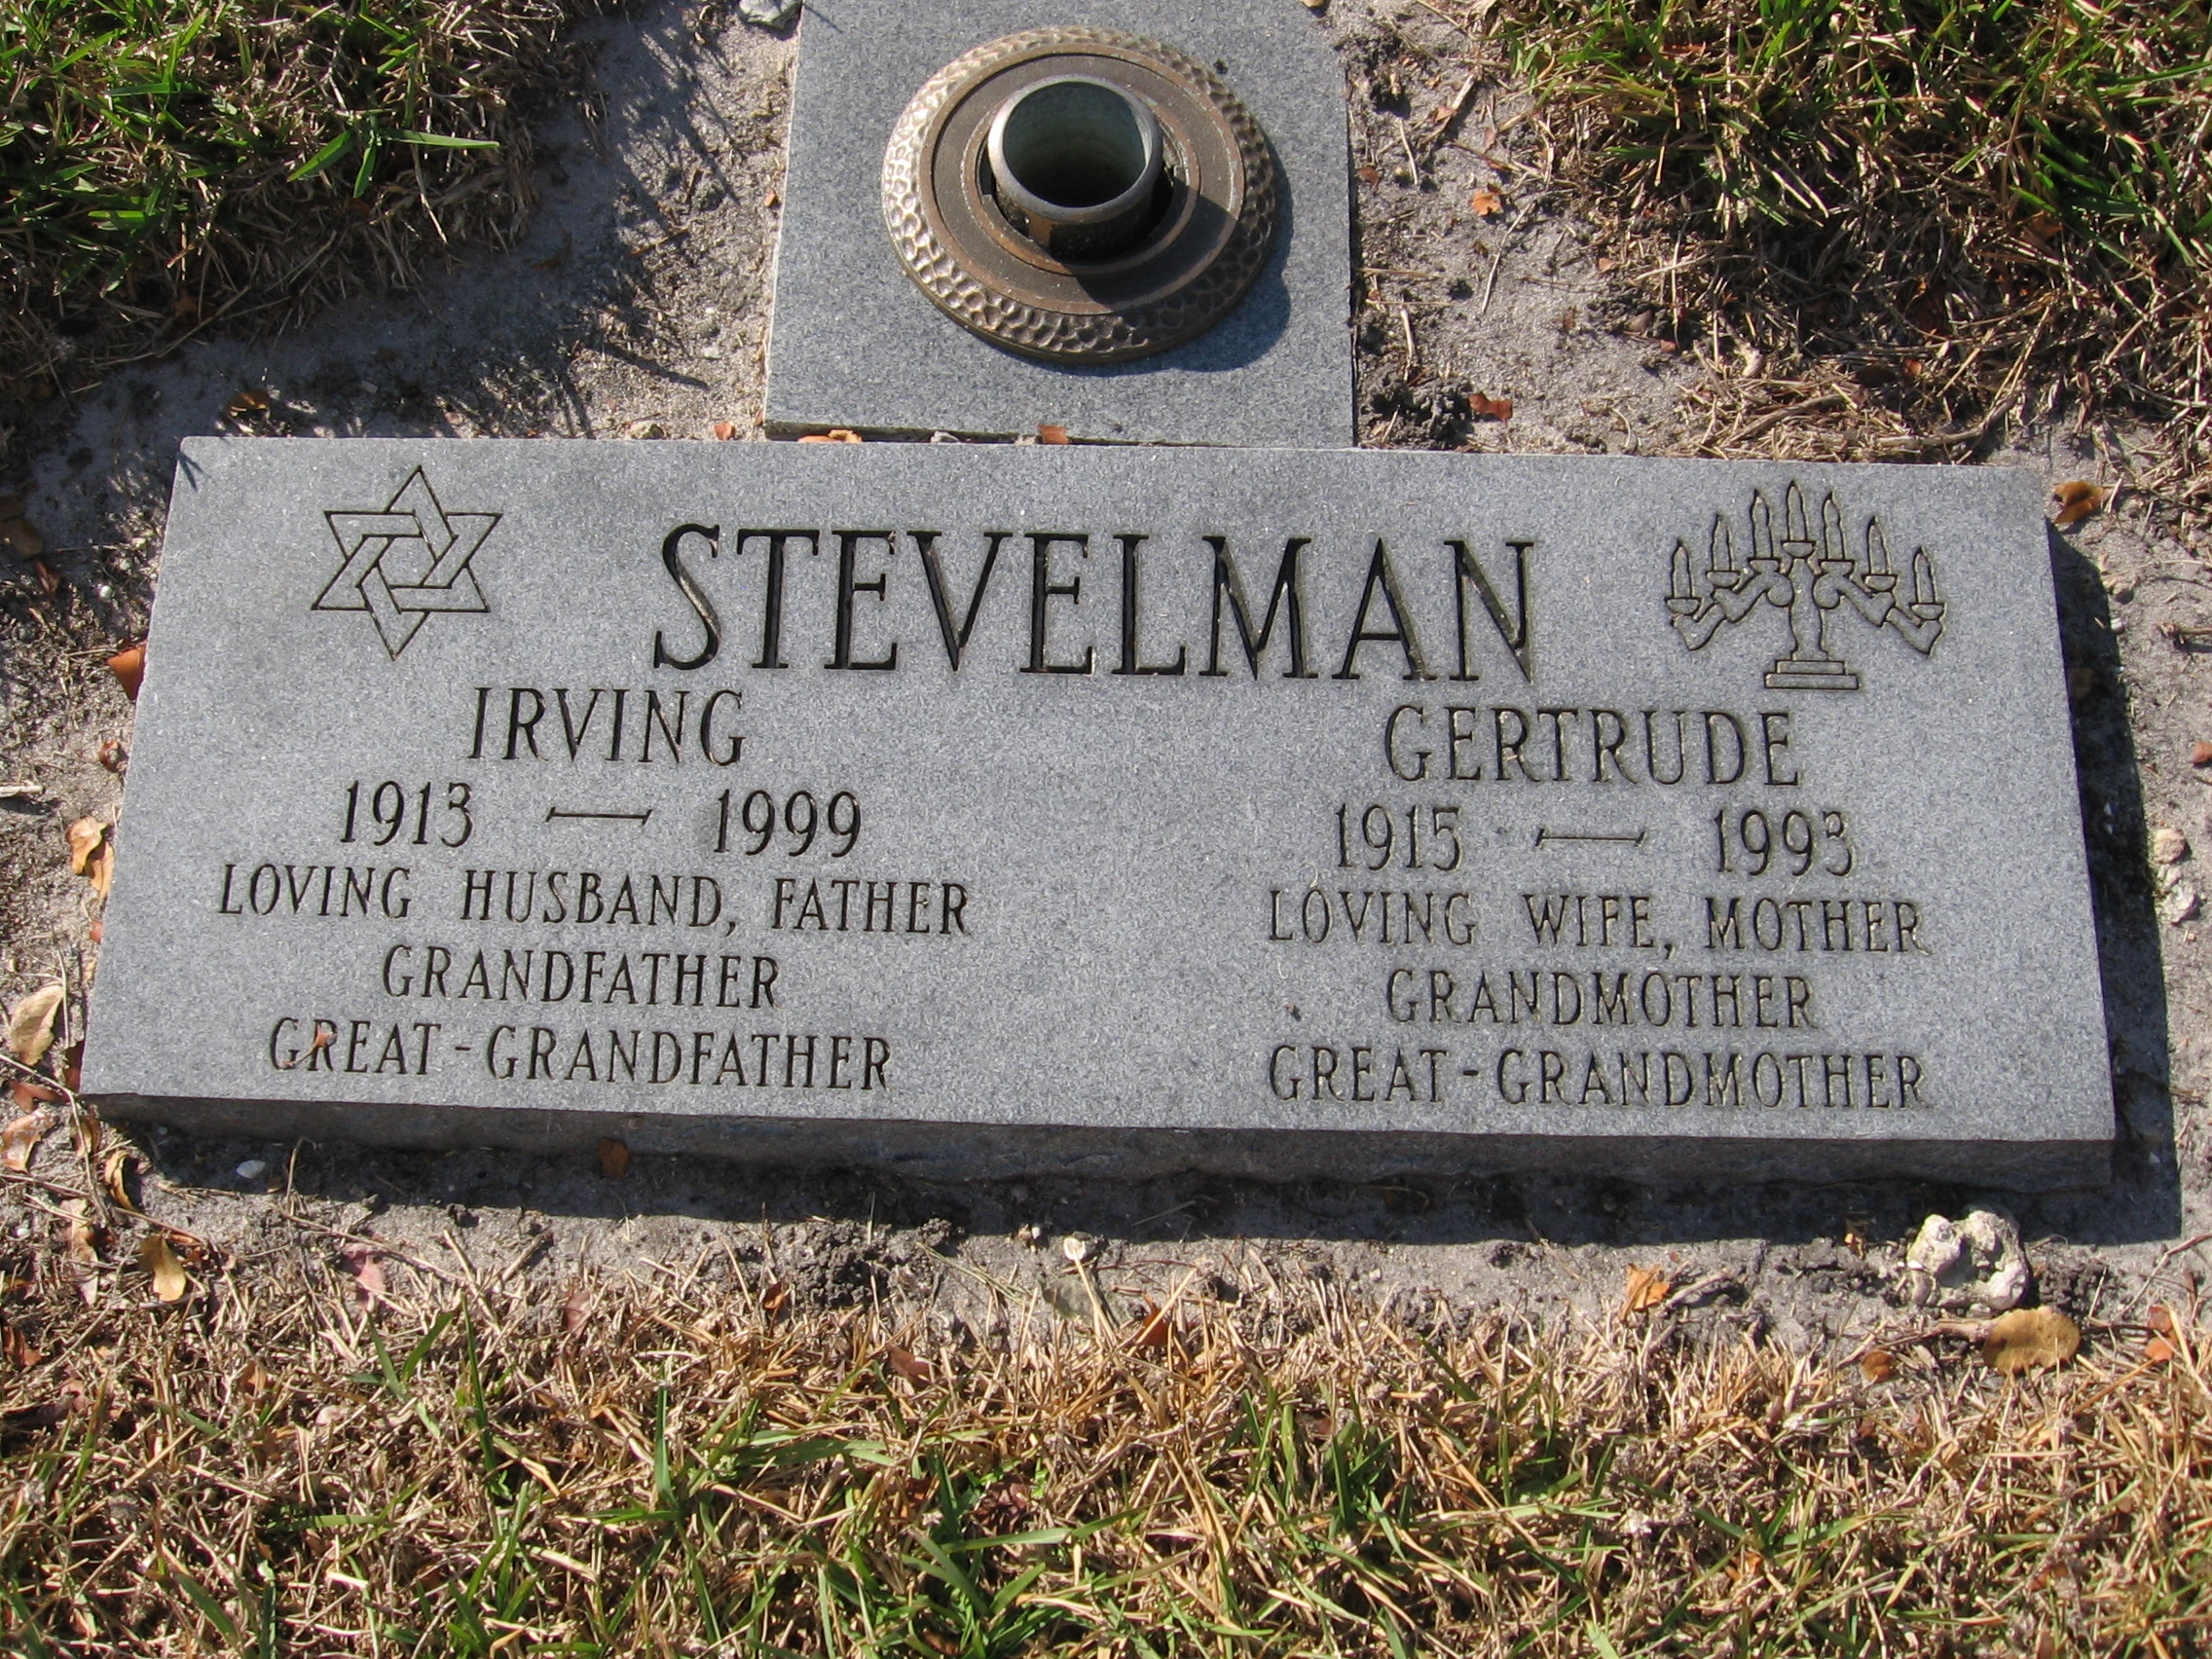 Irving Stevelman